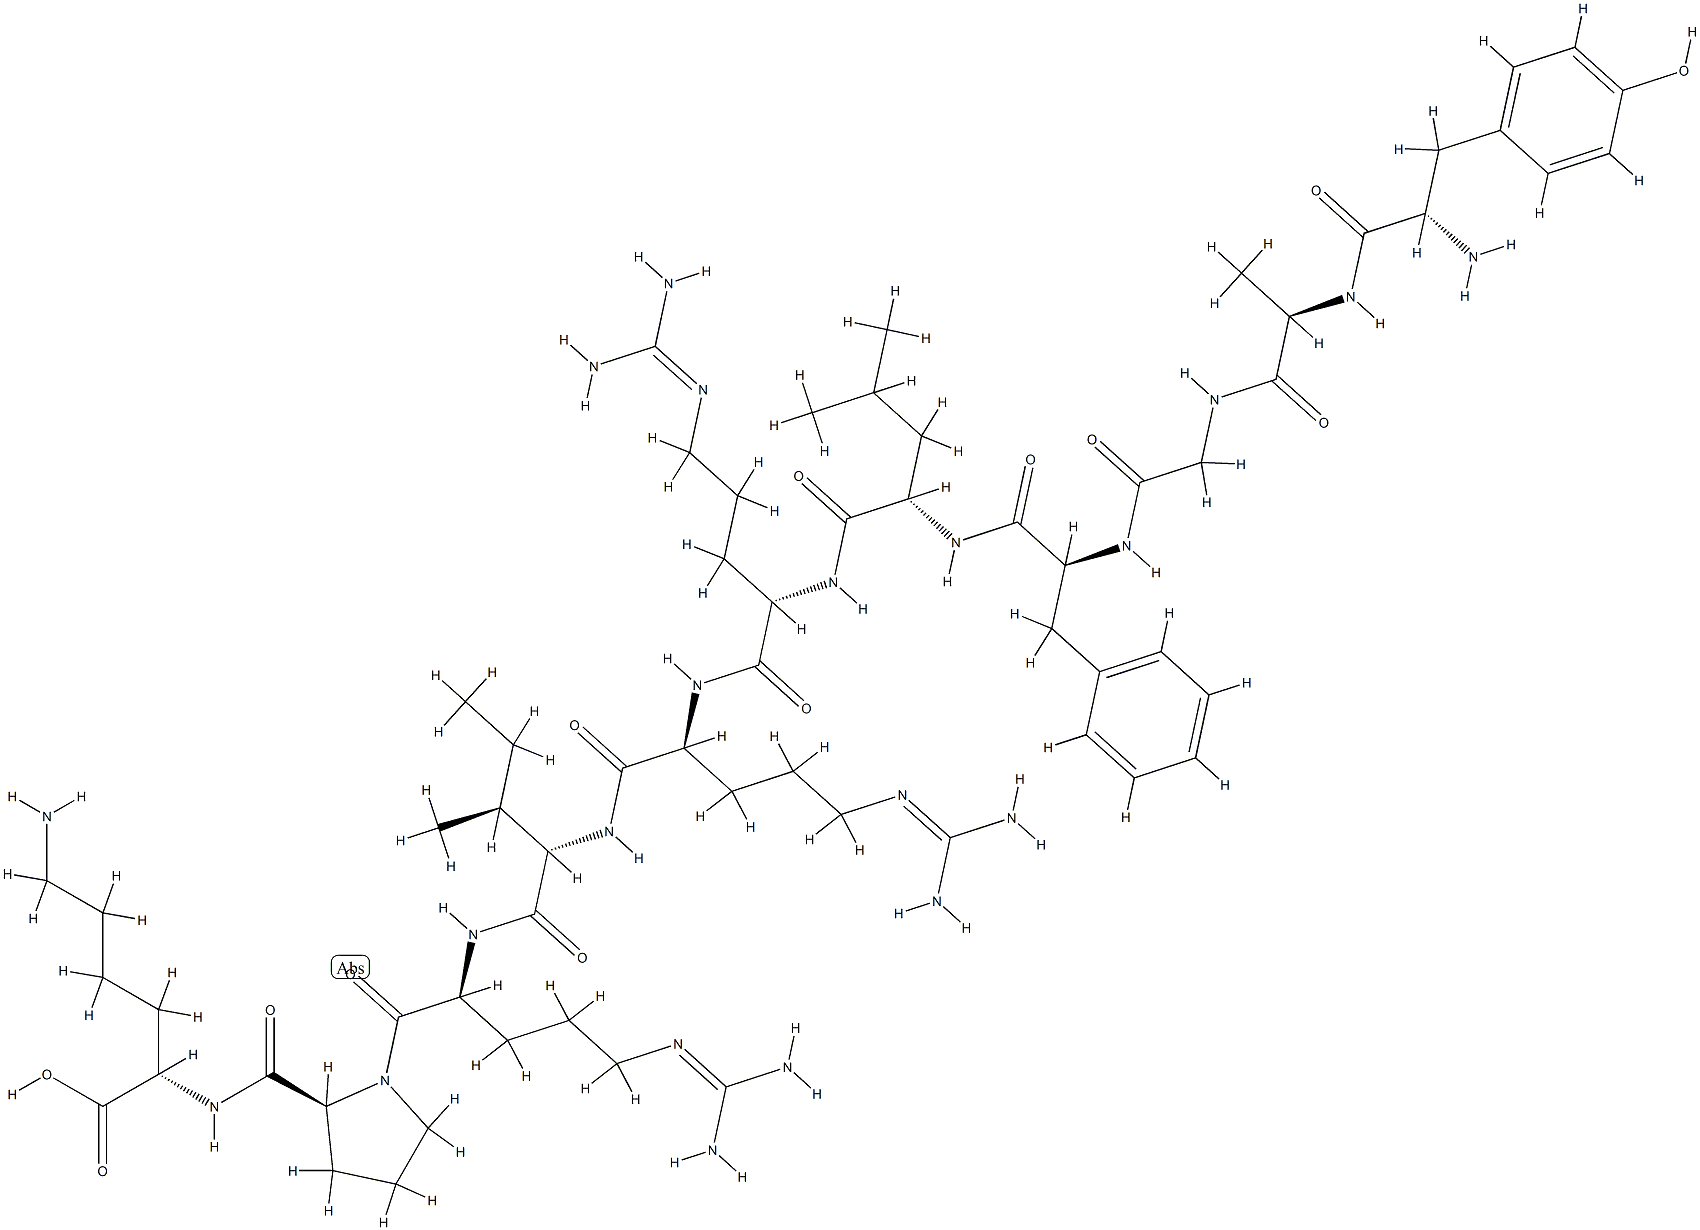 다이노르핀(1-11),알라(2)-